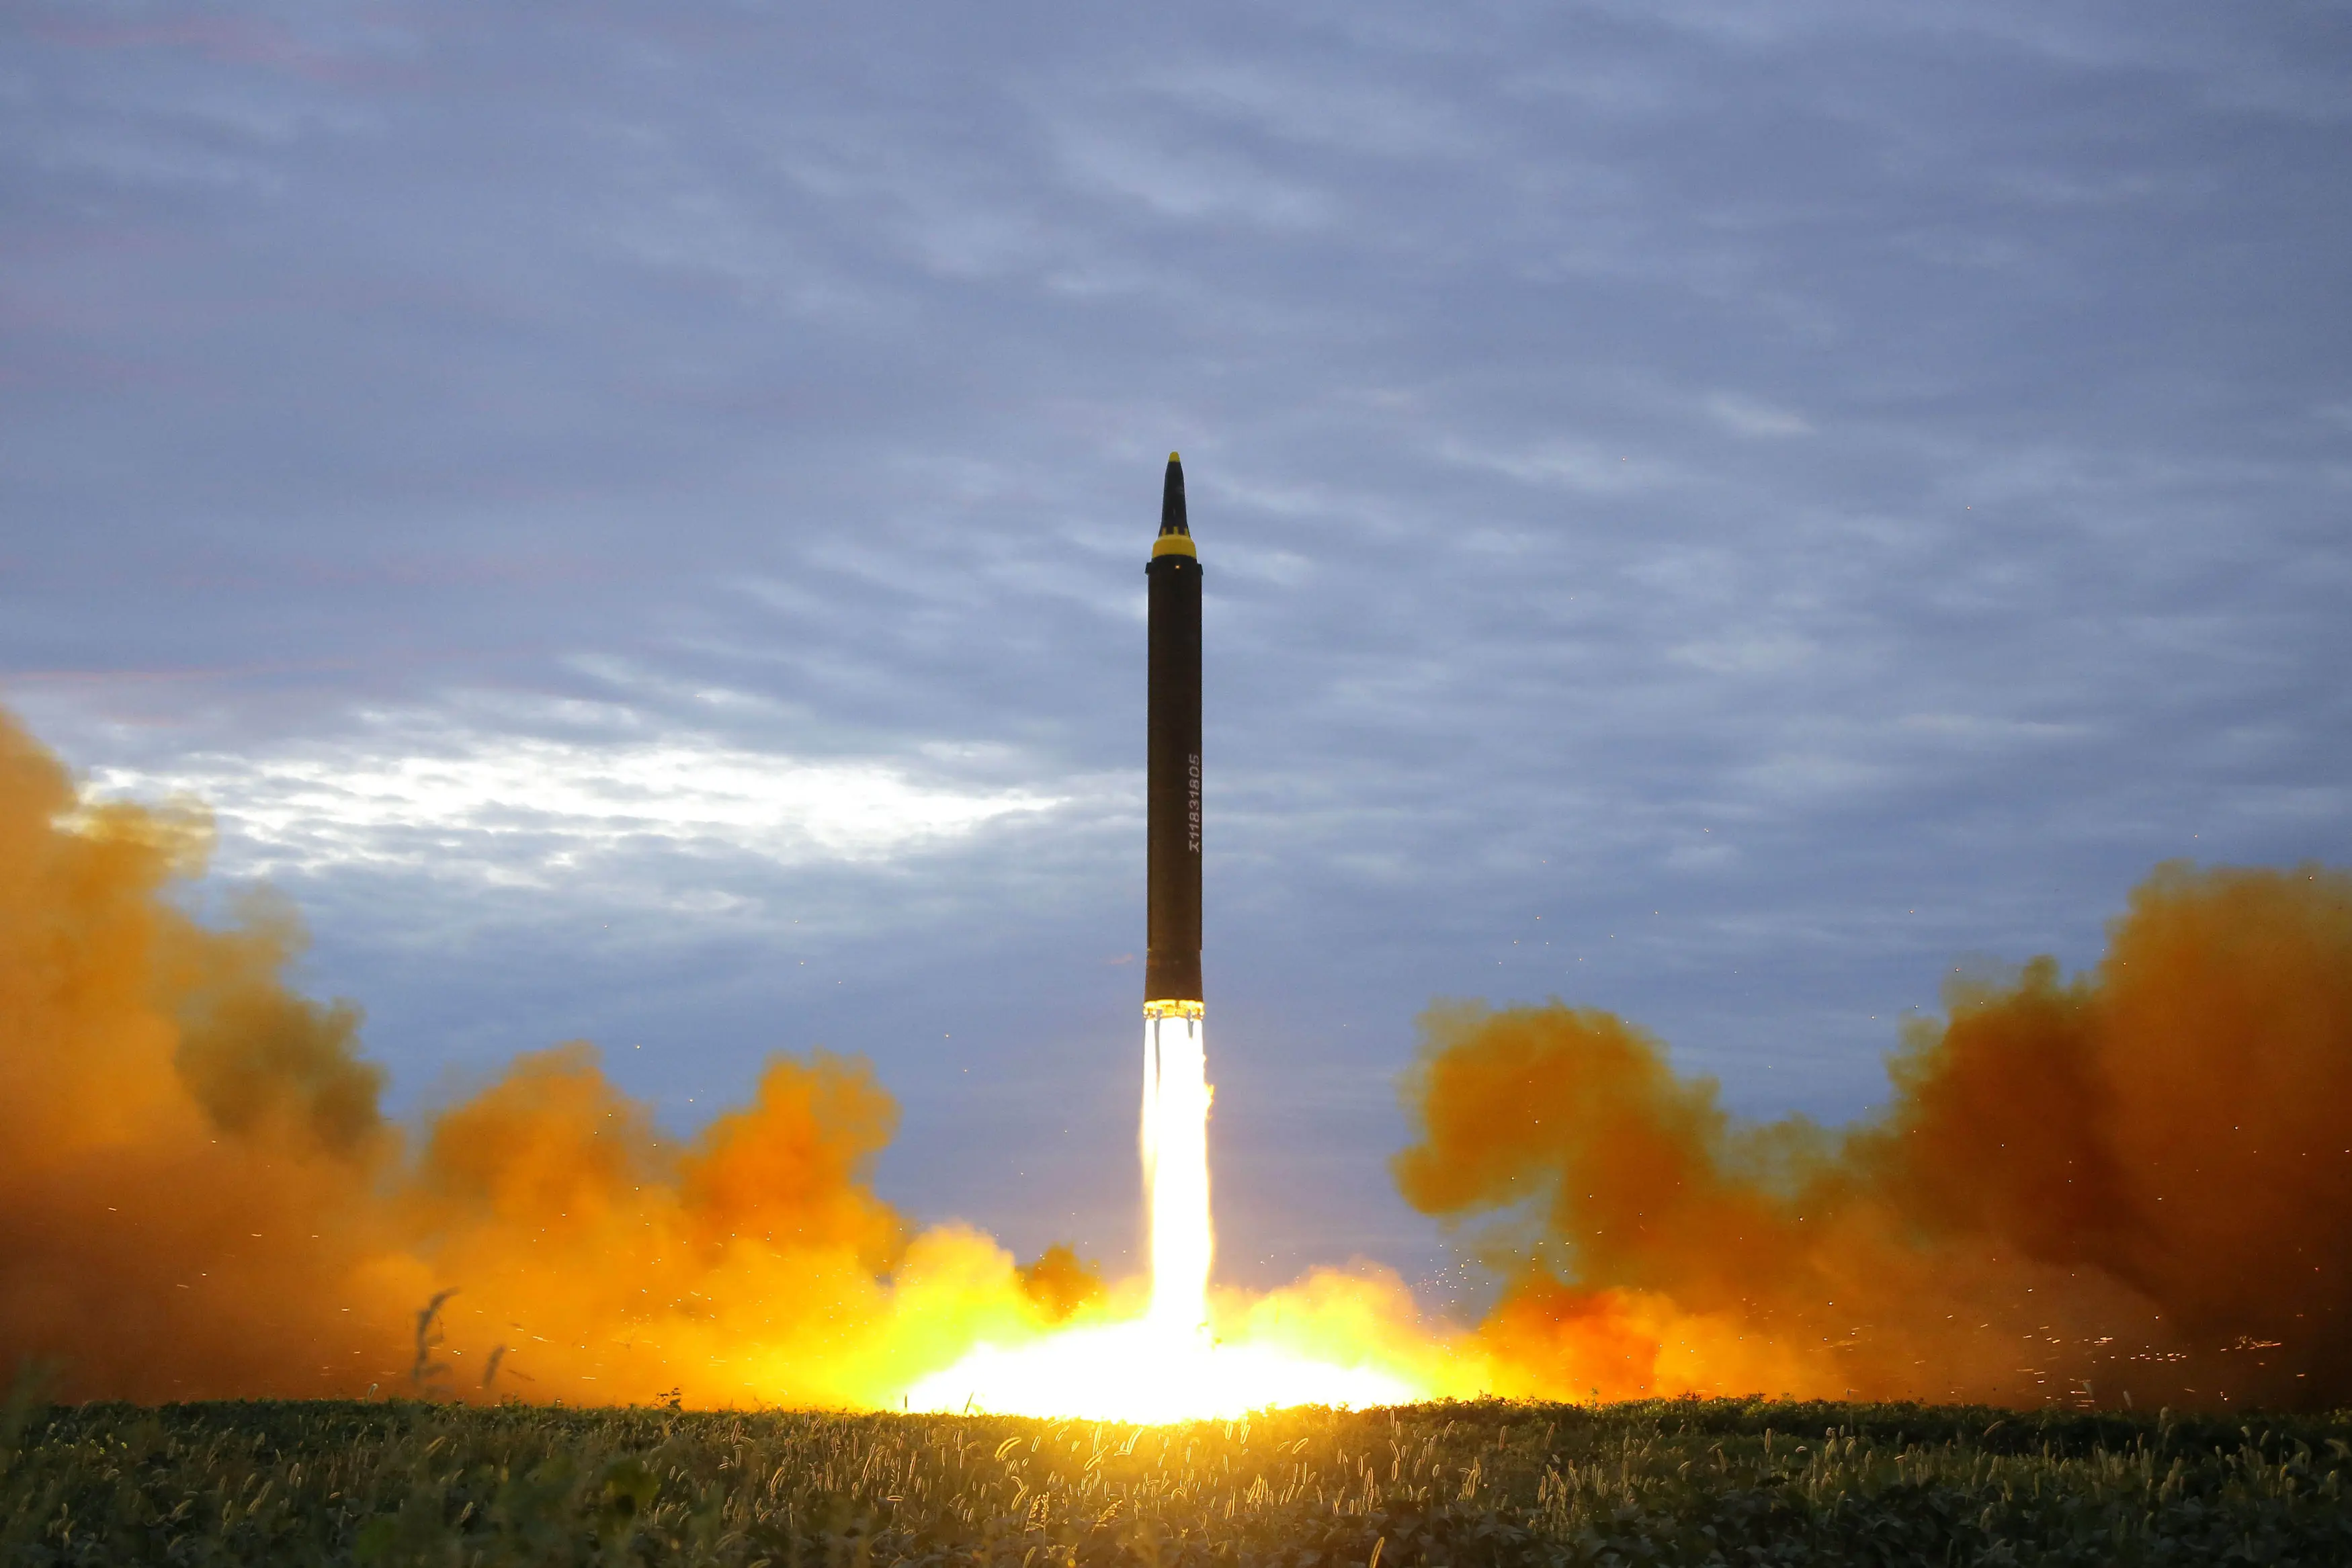 קוריאה הצפונית פרסמה את תיעוד שיגורו של הטיל הבליסטי לעבר יפן